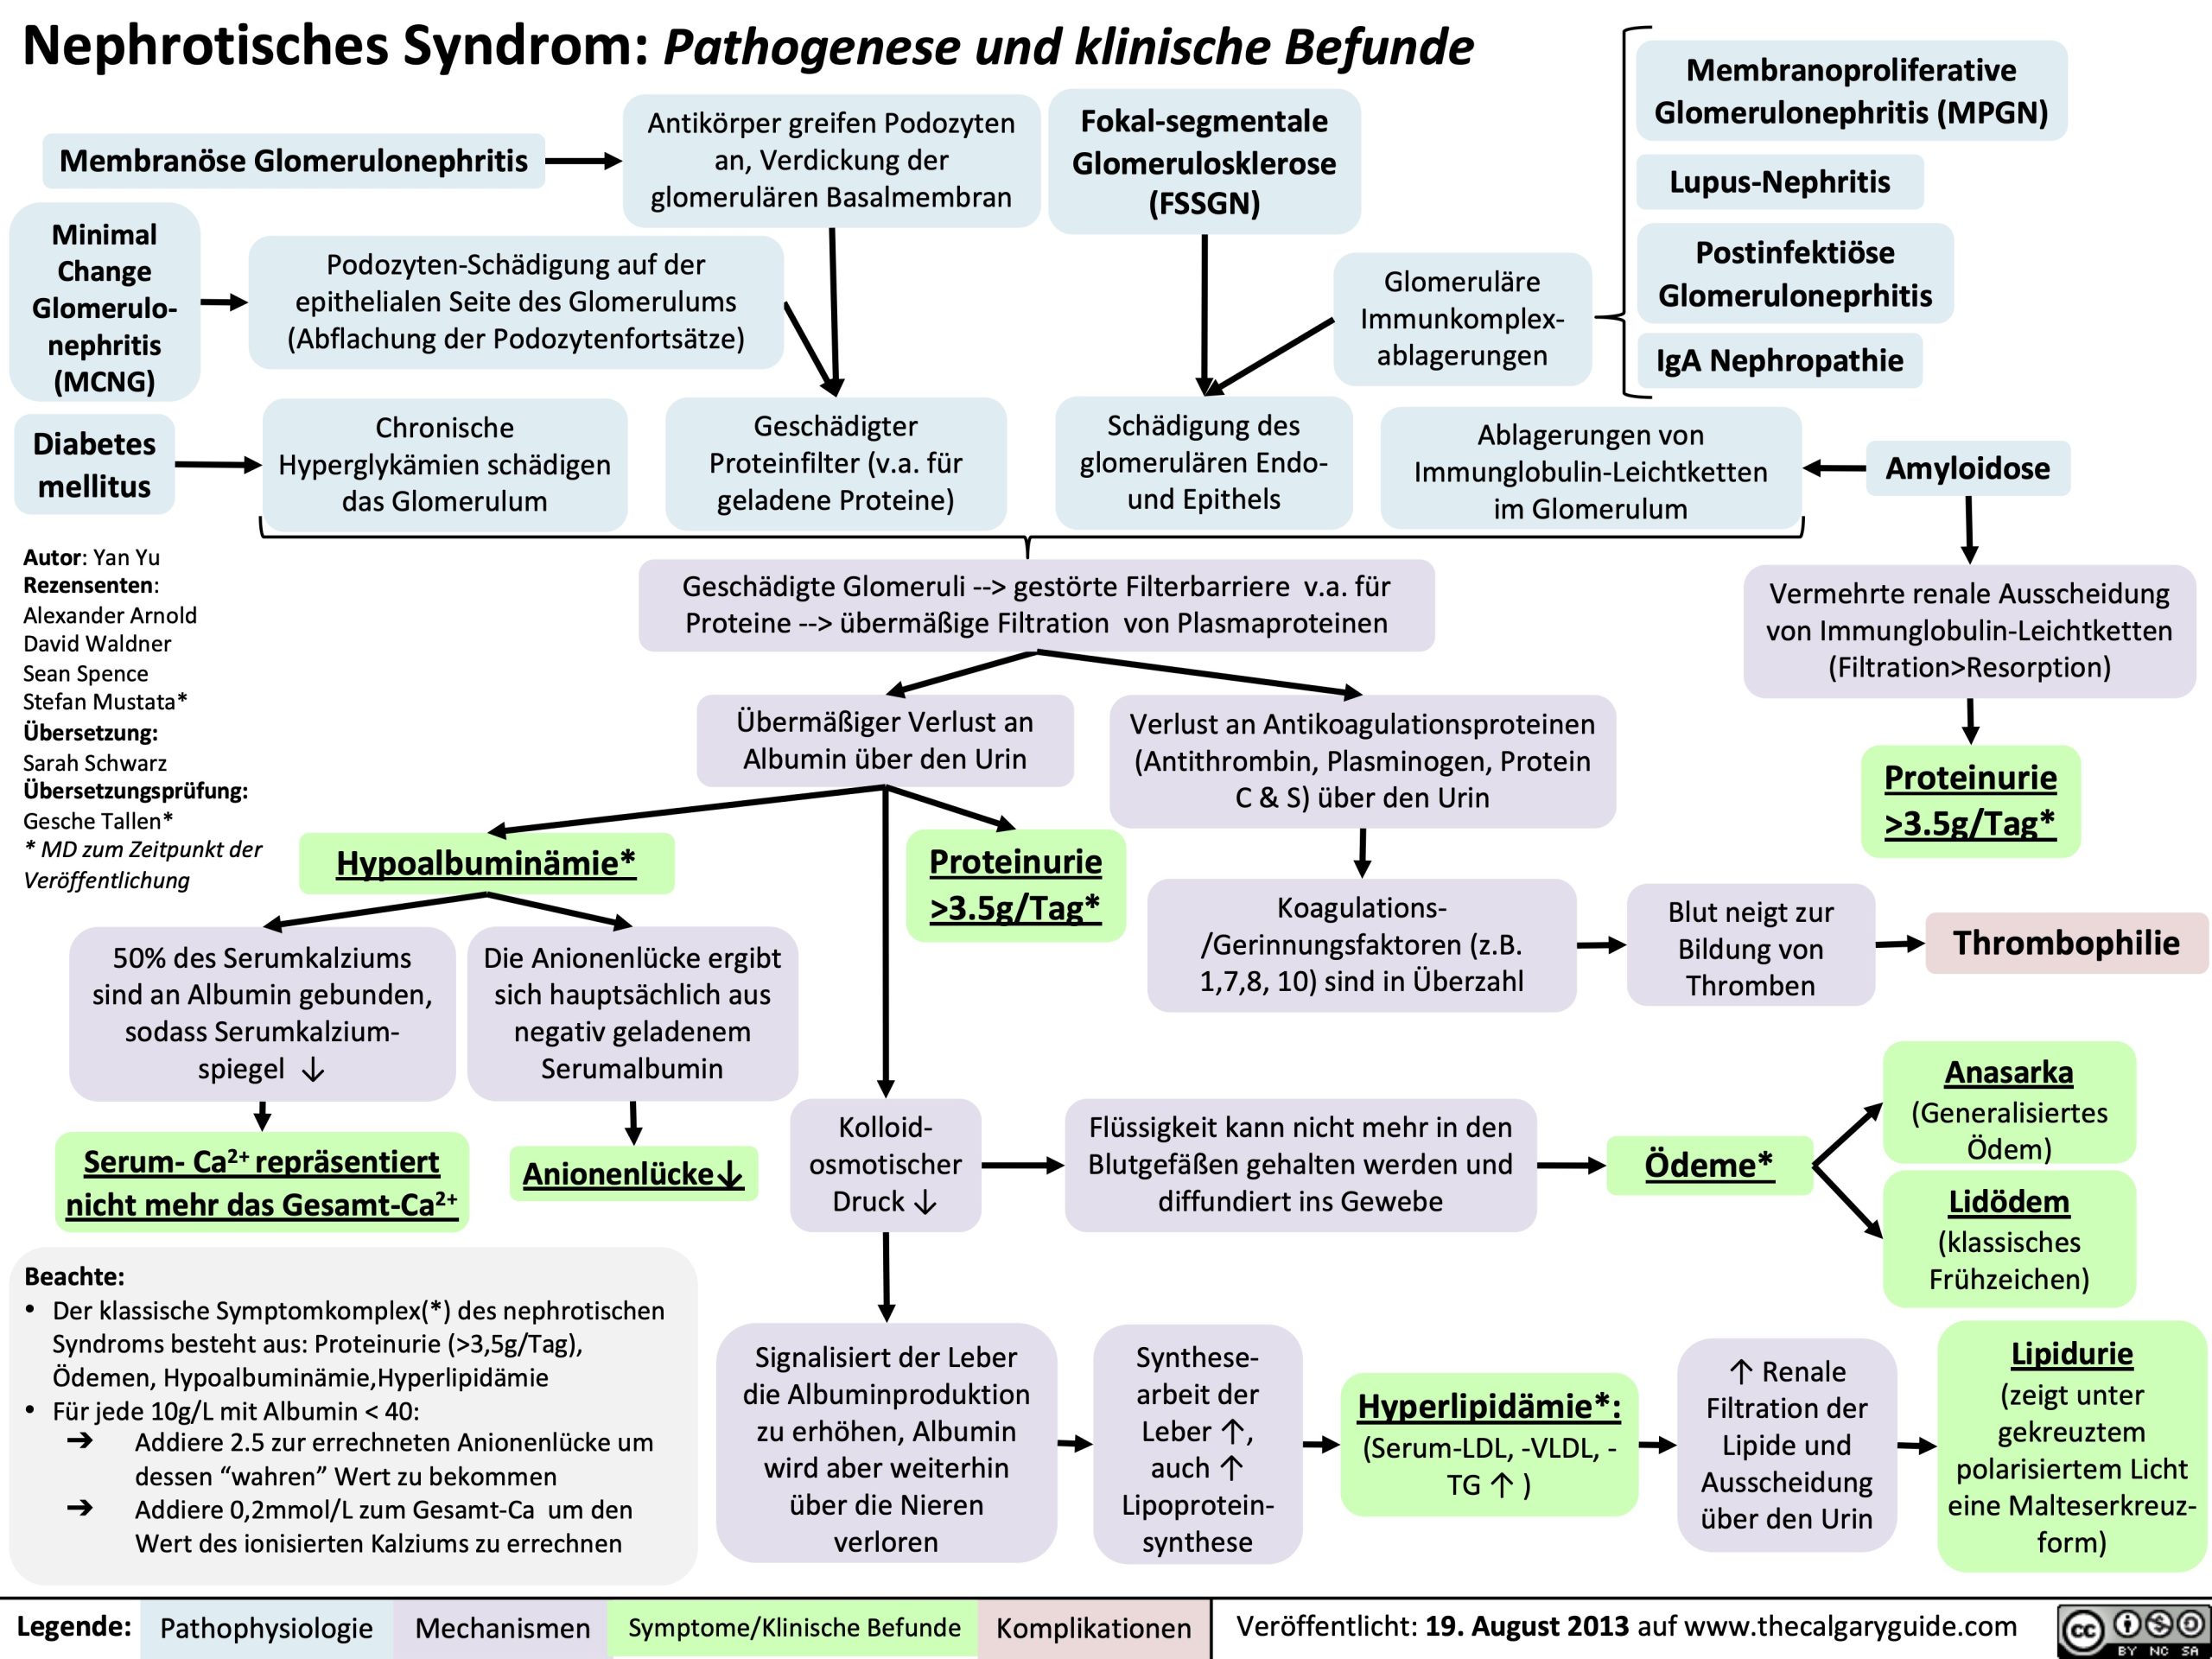 Nephrotisches Syndrom: Pathogenese und klinische Befunde